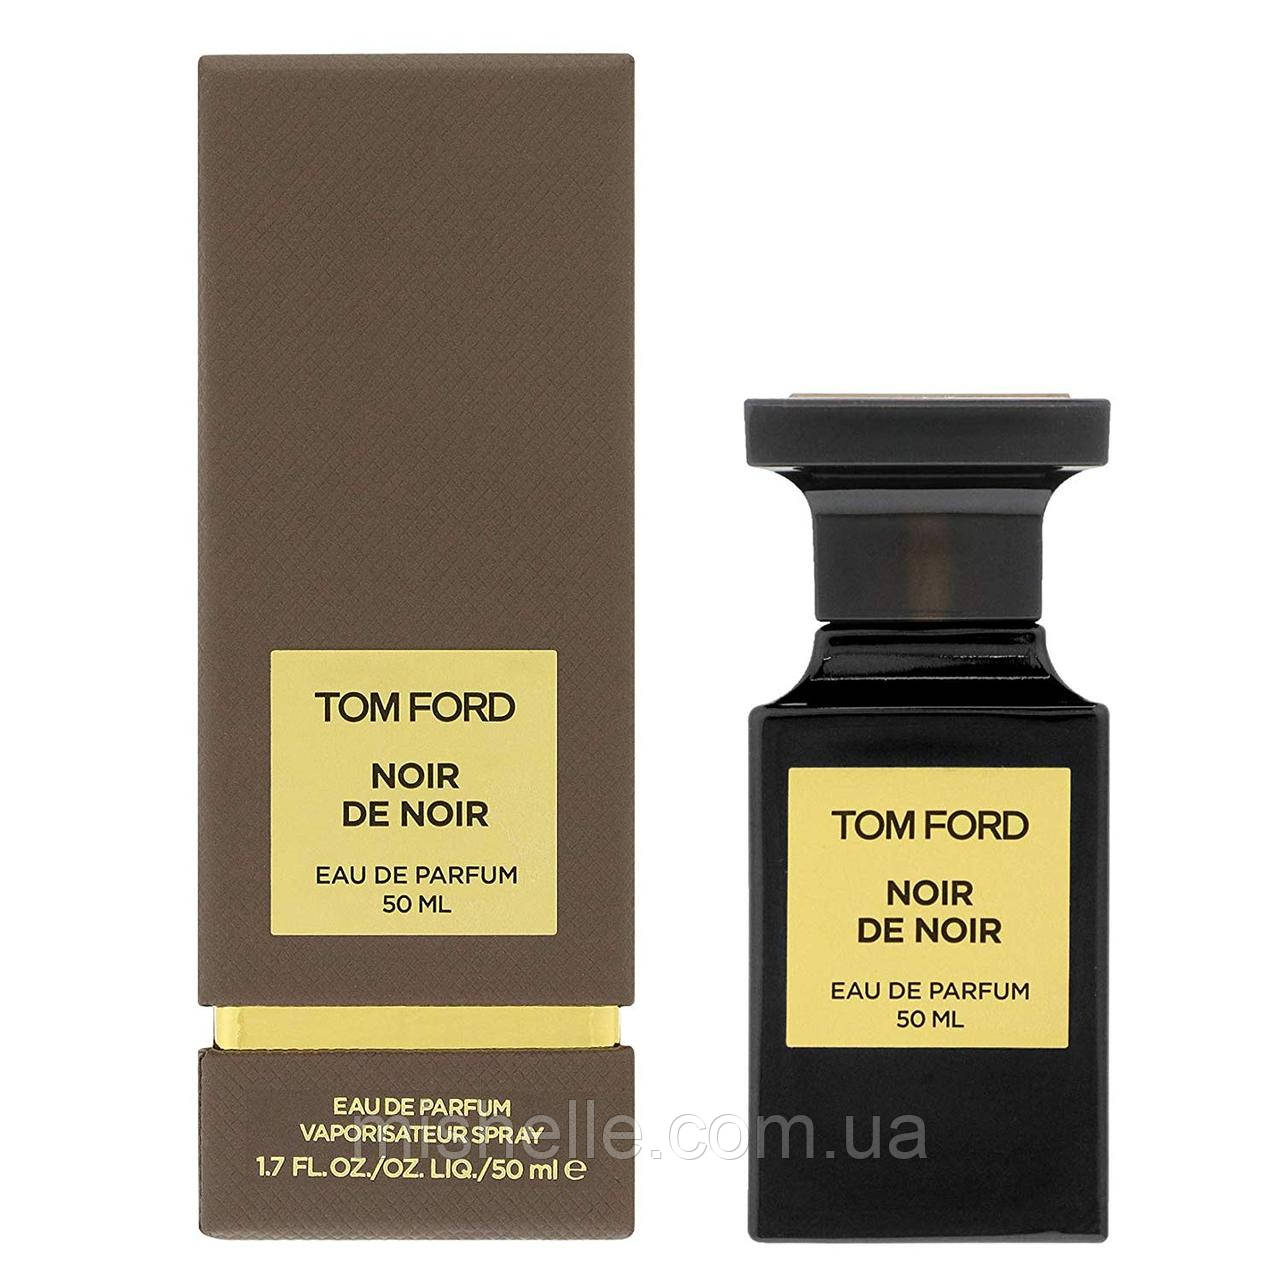 Парфюм унисекс Tom Ford Noir de Noir (Том Форд Ноир де Ноир) купить в ...